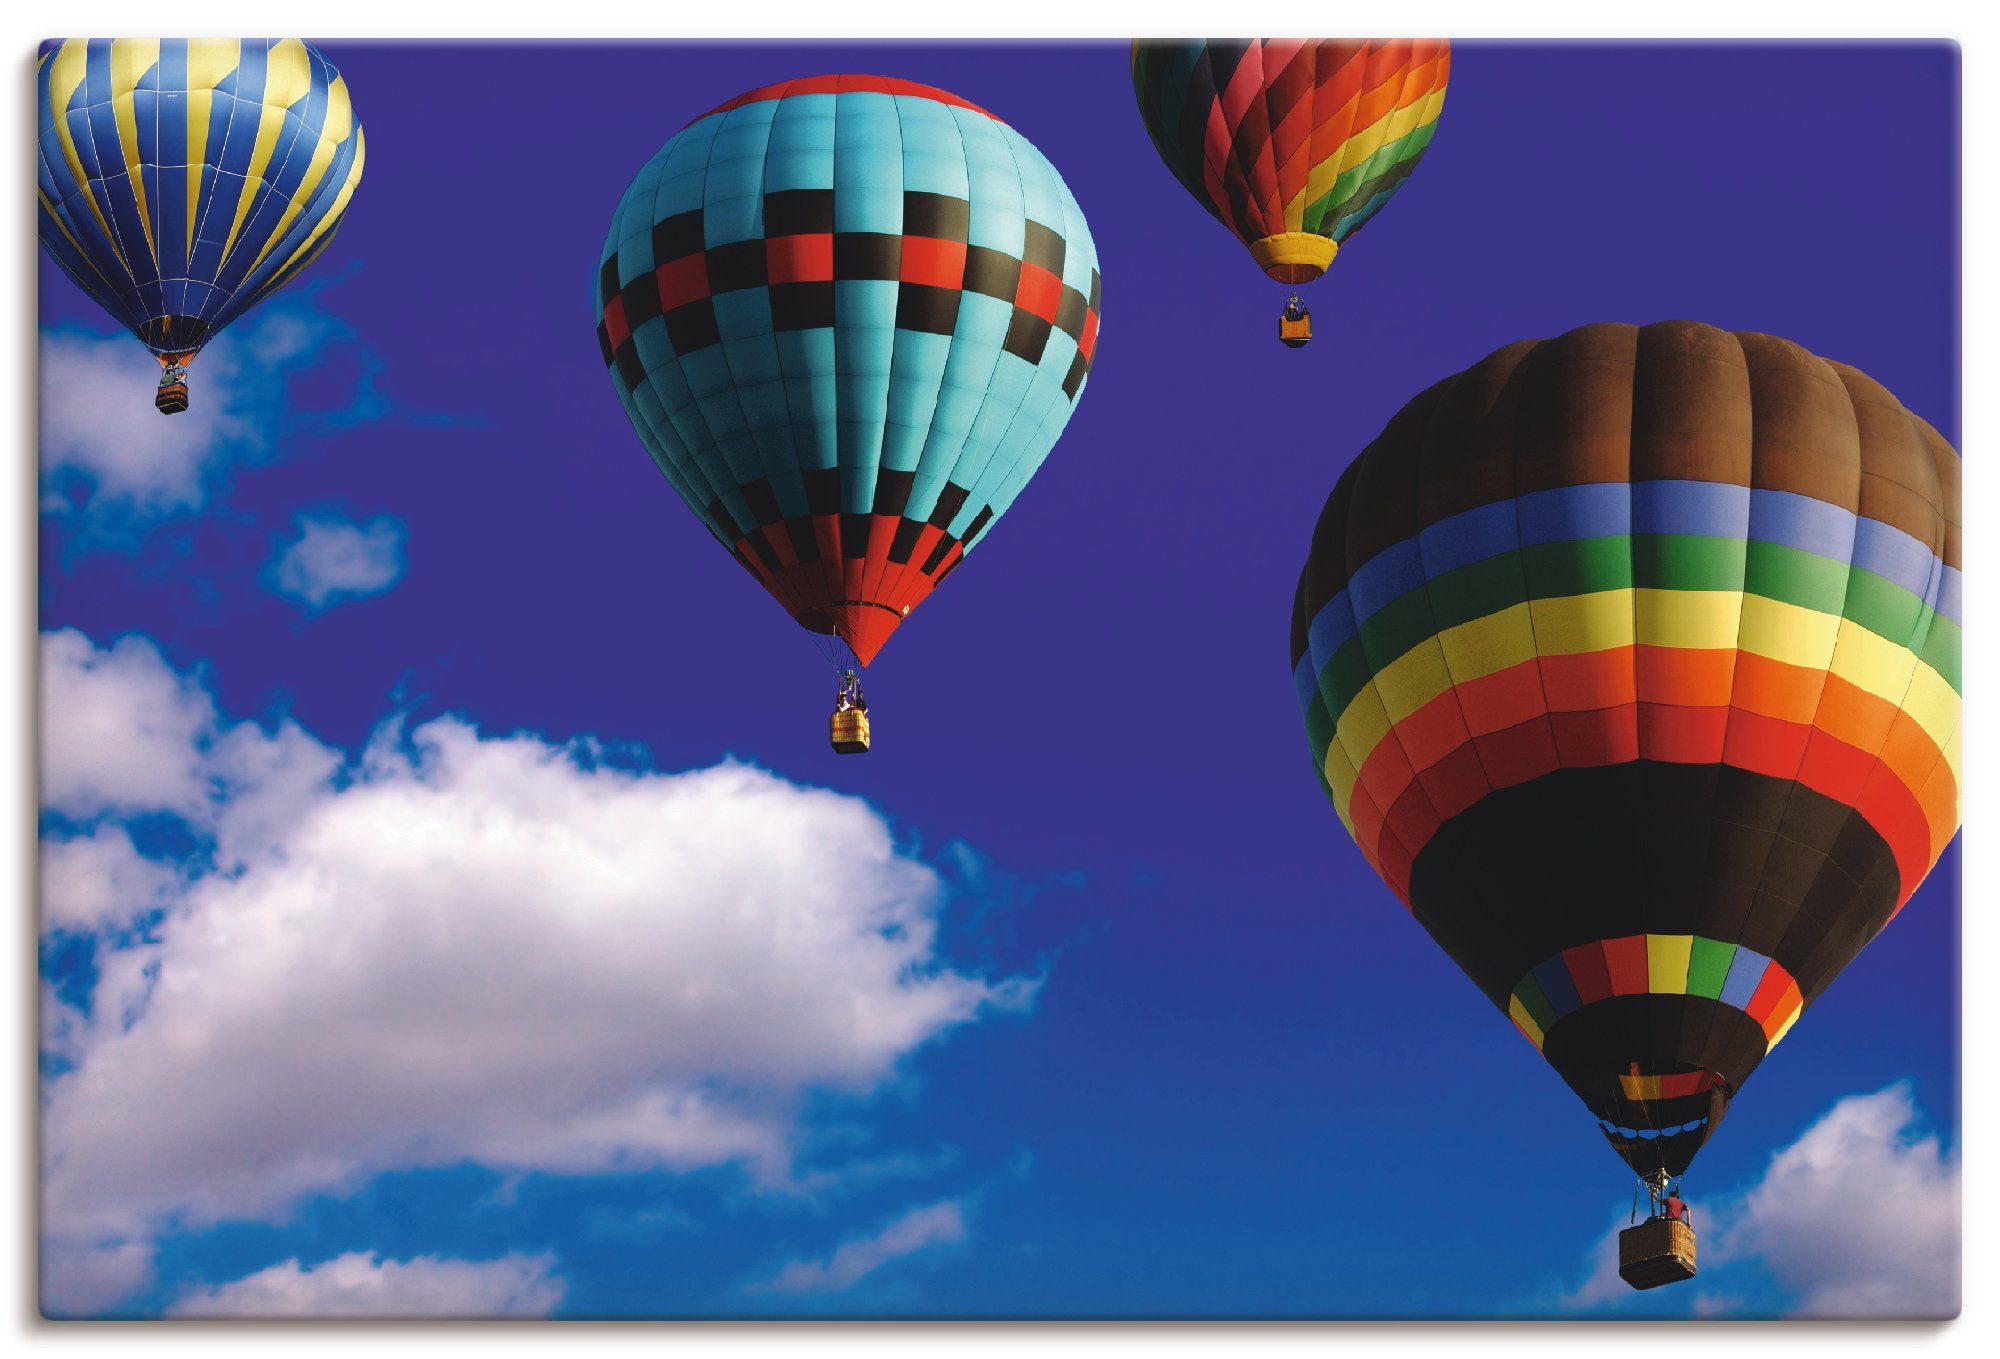 Artland Artprint Heteluchtballonnen in de lucht in vele afmetingen & productsoorten - artprint van aluminium / artprint voor buiten, artprint op linnen, poster, muursticker / wandf